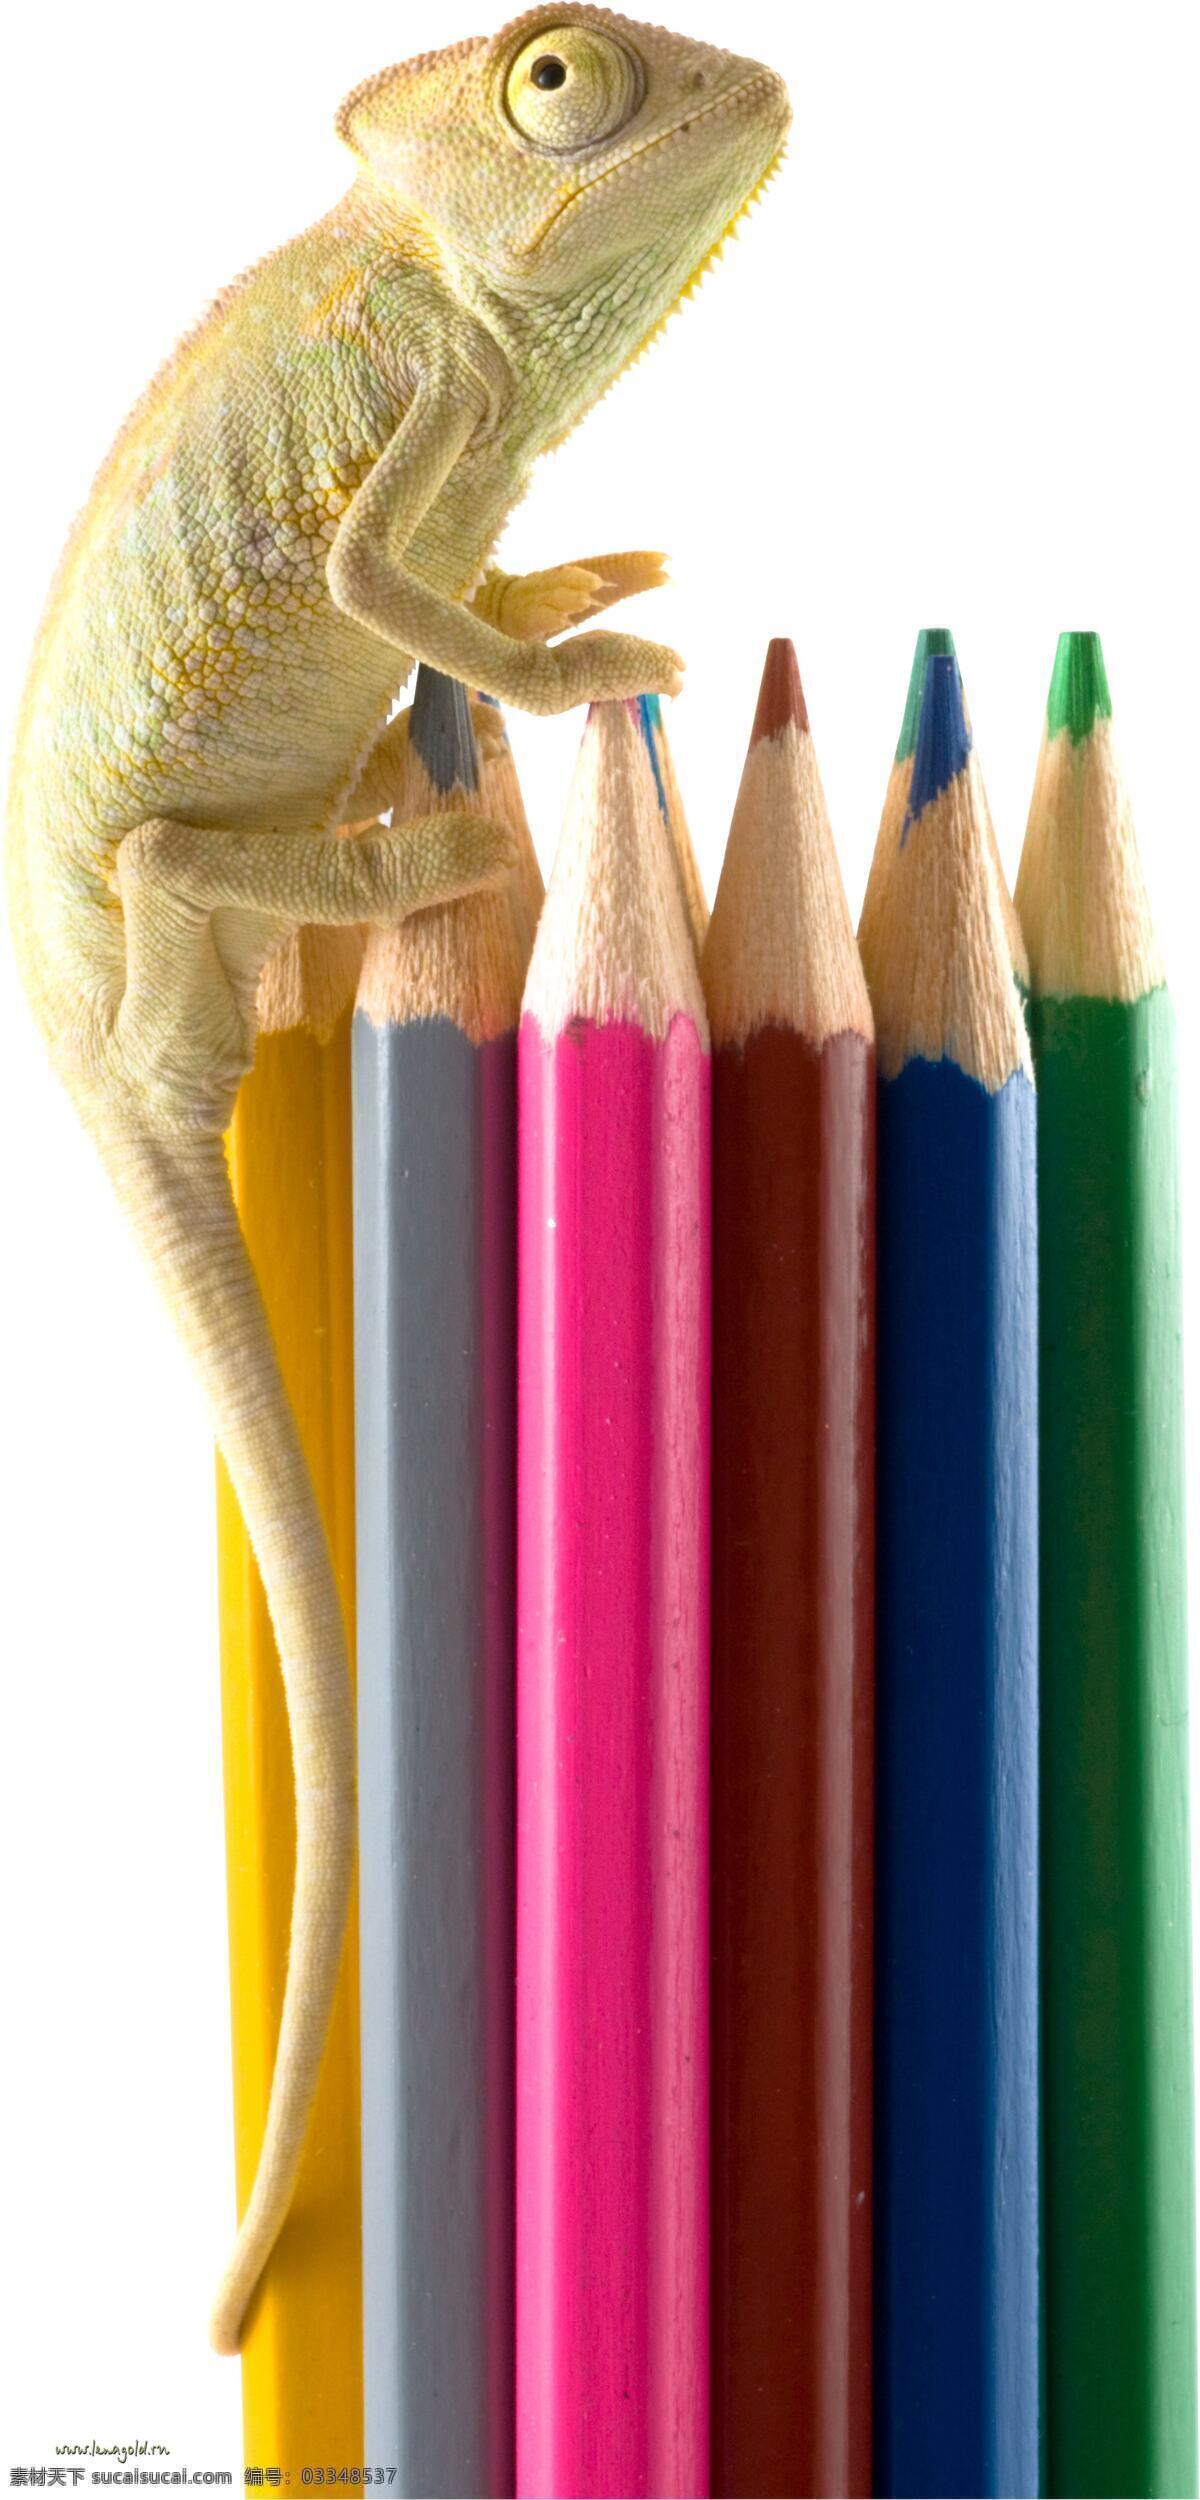 趴在 铅笔 上 蜥蜴 动物 彩色铅笔背景 画笔 蜡笔 文具 学习用品 办公学习 生活百科